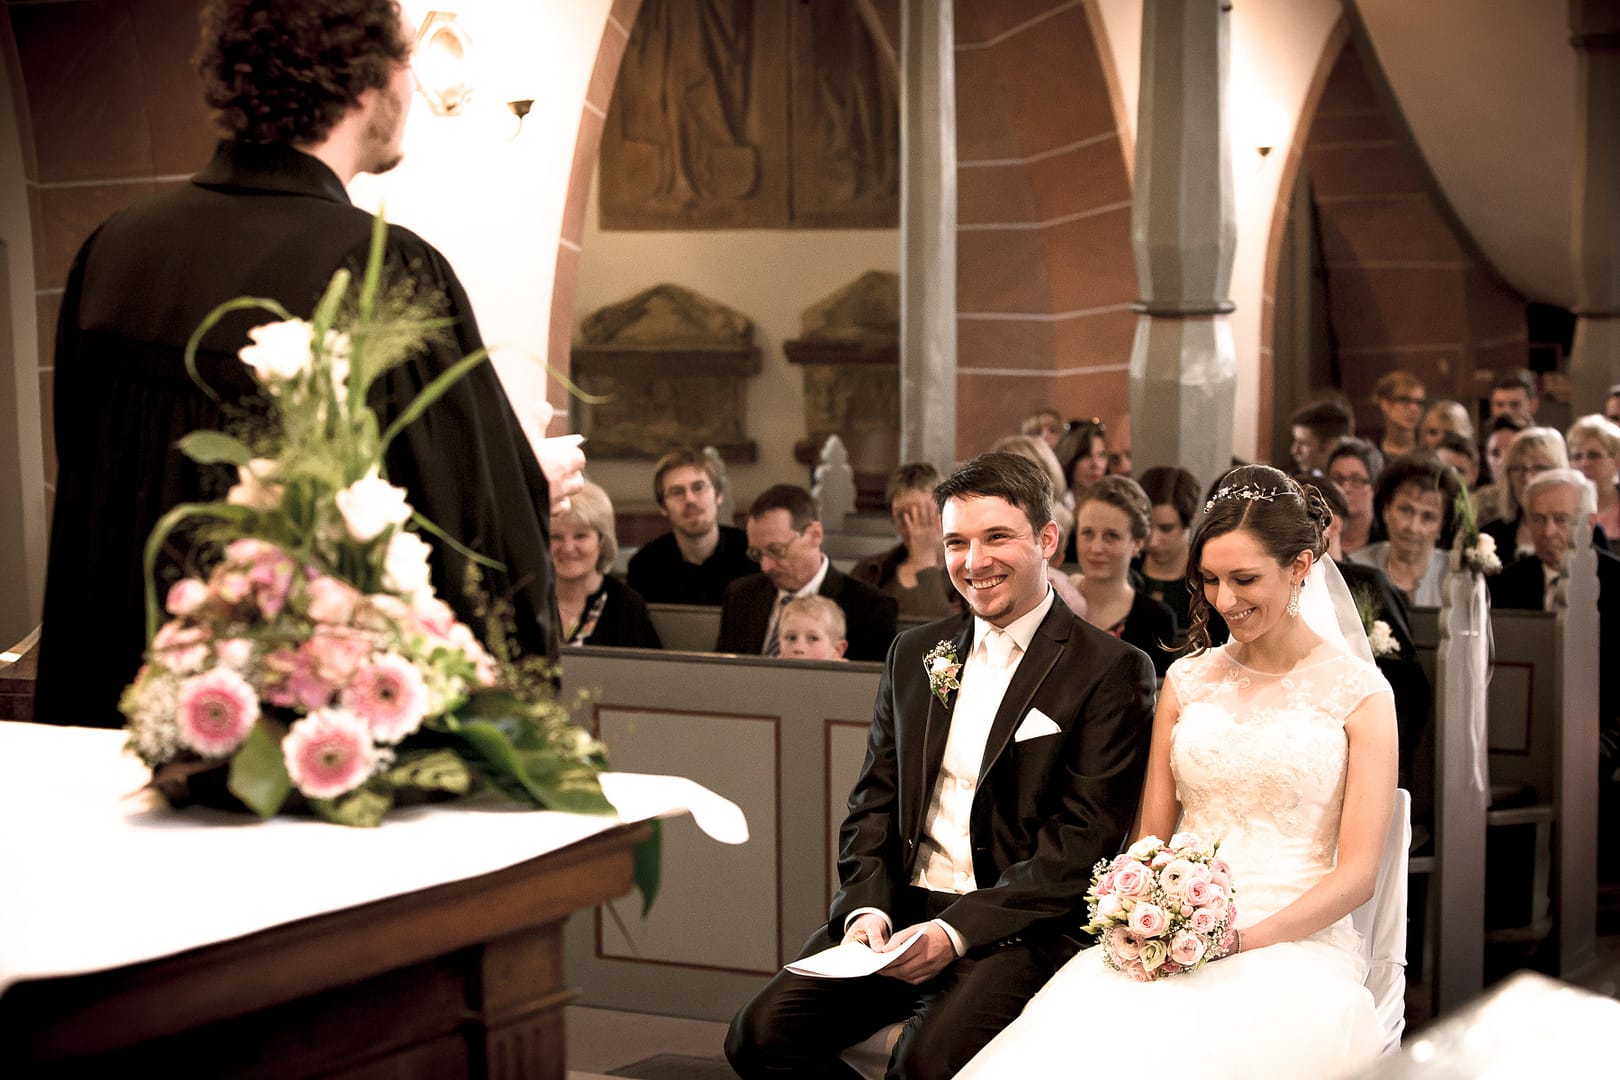 Der Priester steht vor dem Hochzeitspaar und erzählt. Die Braut und der Bräutigam lachen.